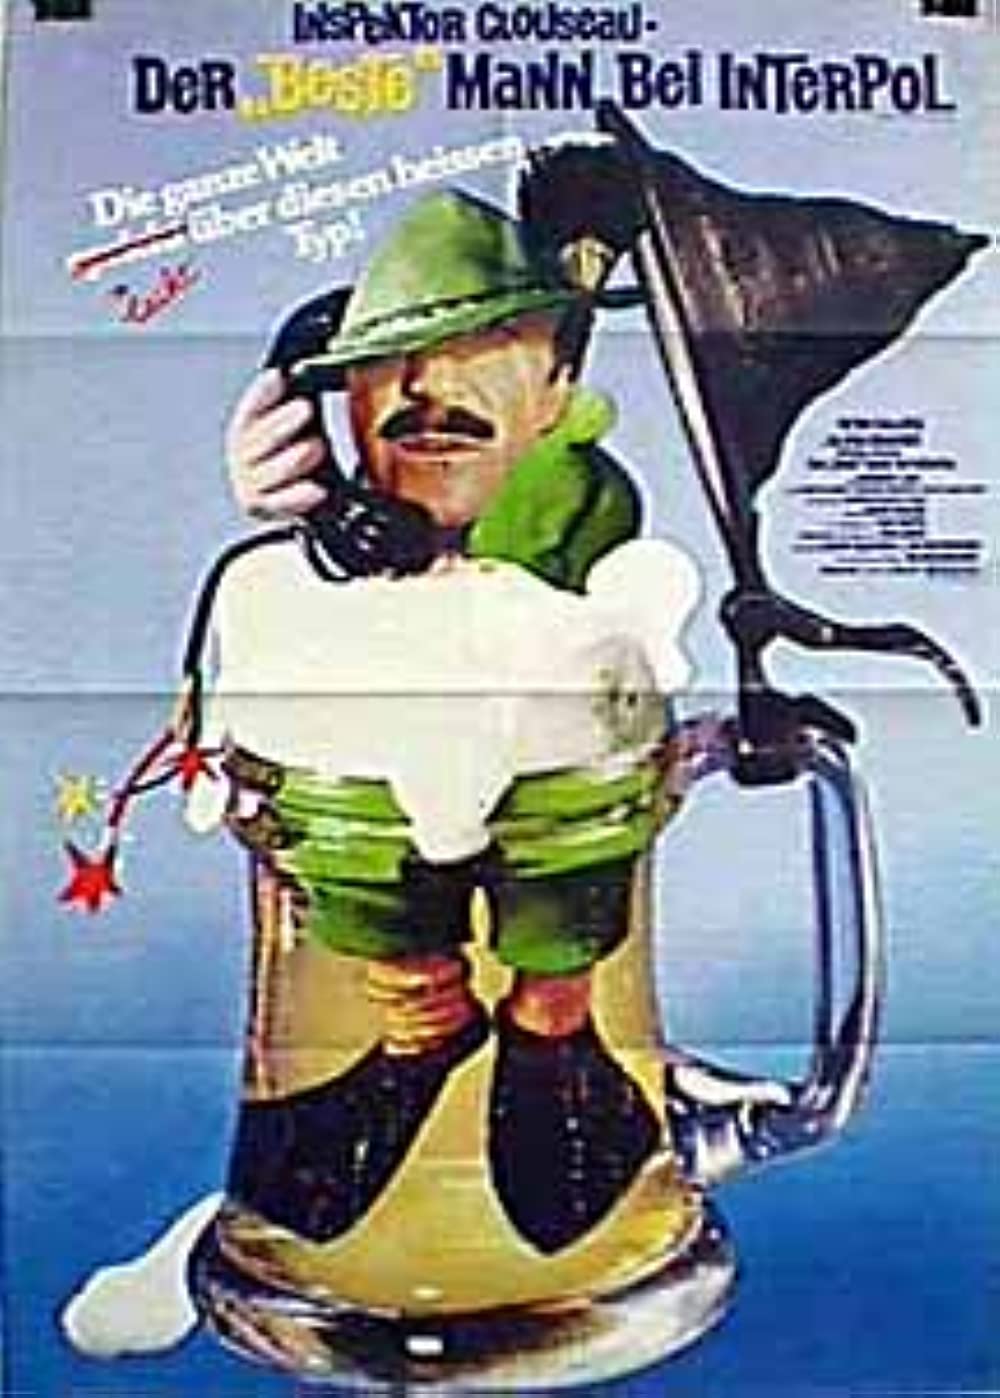 Filmbeschreibung zu Inspektor Clouseau, der beste Mann bei Interpol